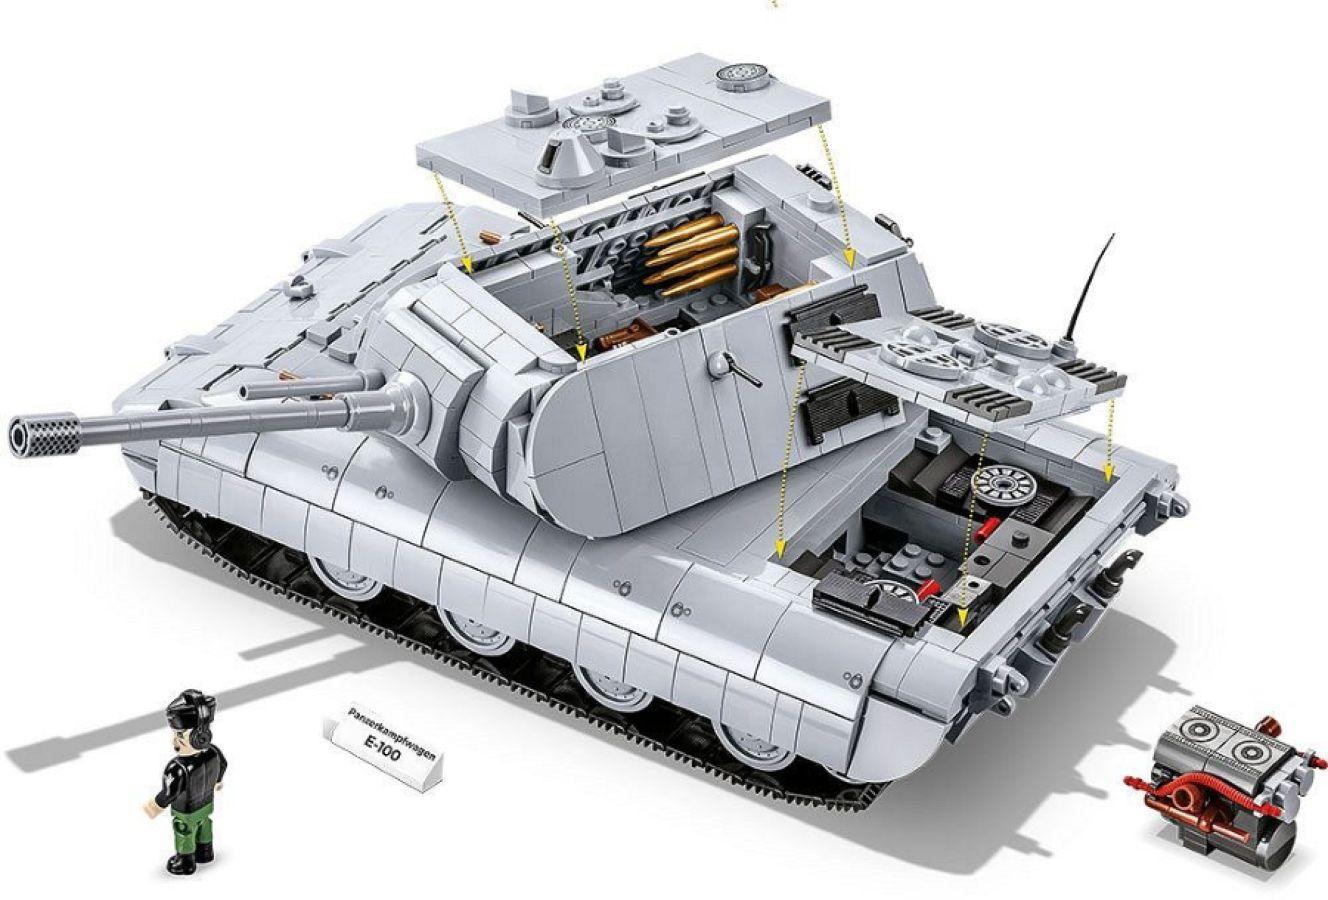 COB2572 World War 2 - Panzerkampfwagen E-100 (1510 Piece Kit) - Cobi - Titan Pop Culture